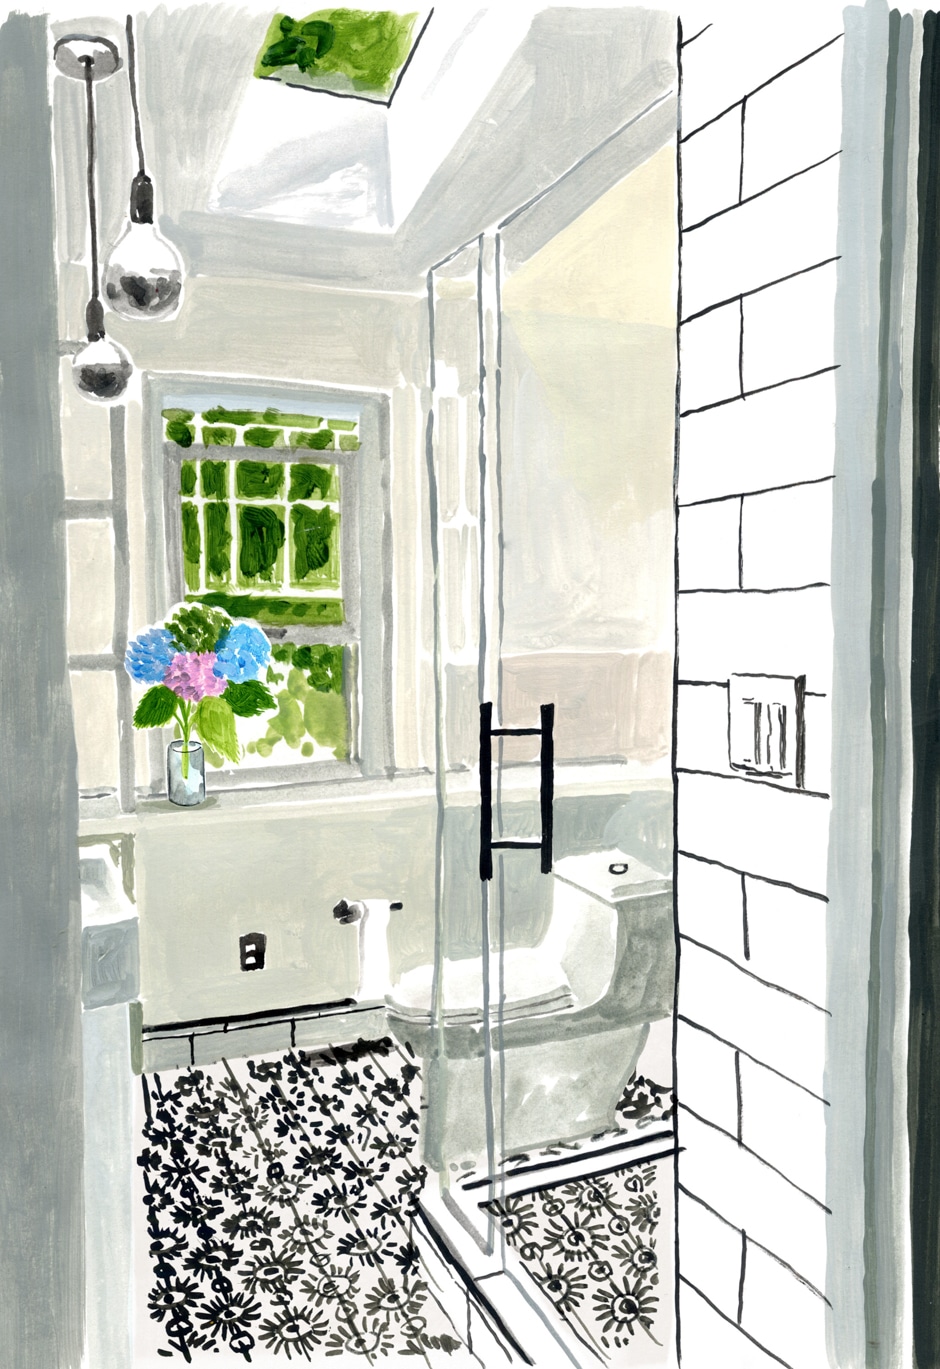 renovated bathroom illustration